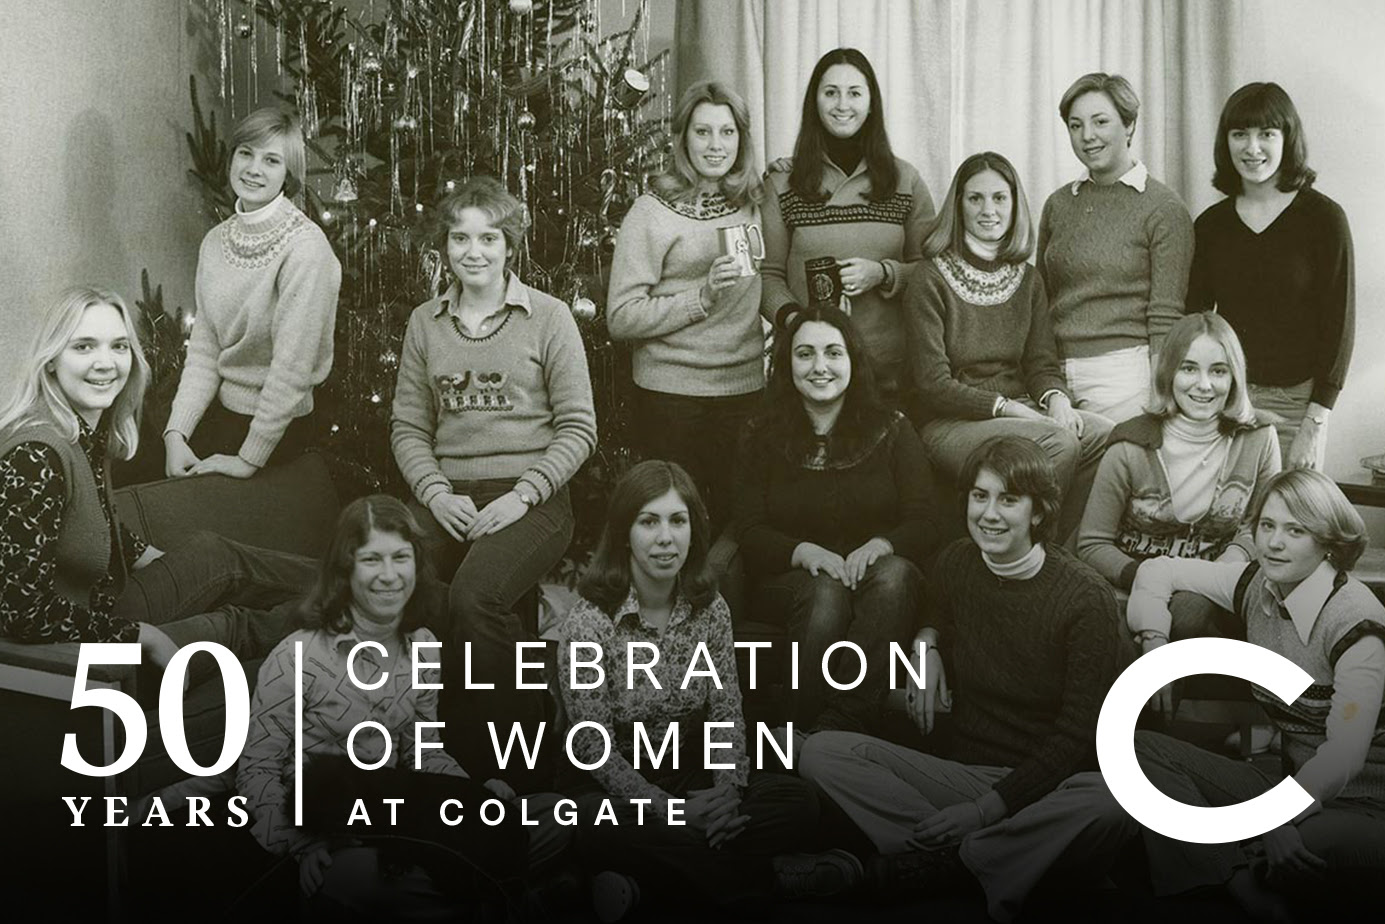 50 Years Celebrating Women at Colgate